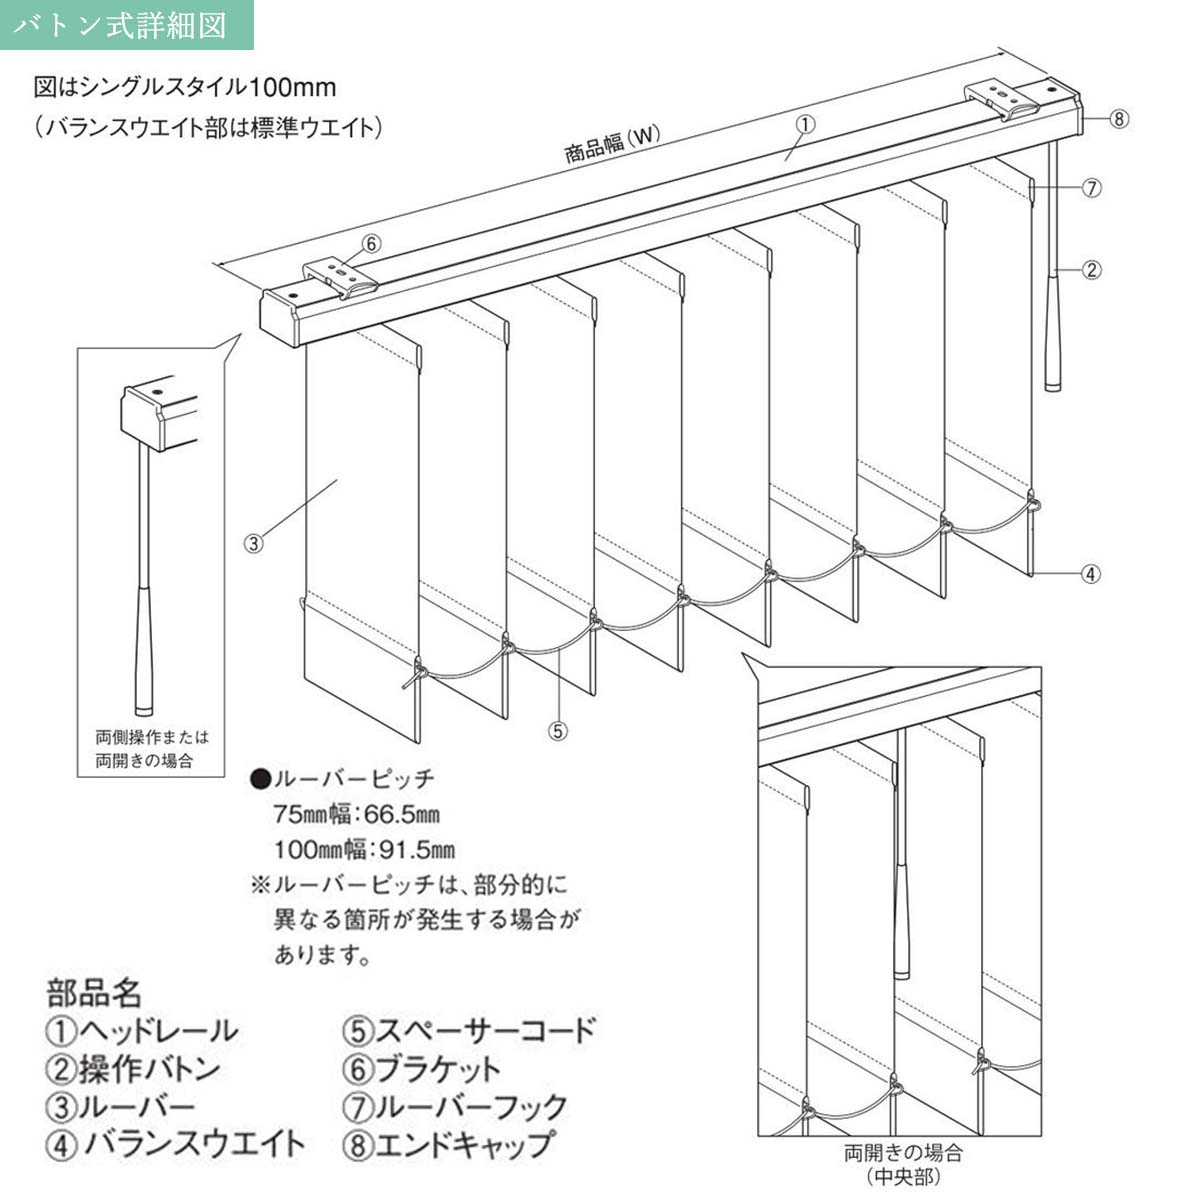 日本製バーチカルブラインドアルペジオ 『リーチェ遮熱 ルーバー100mm